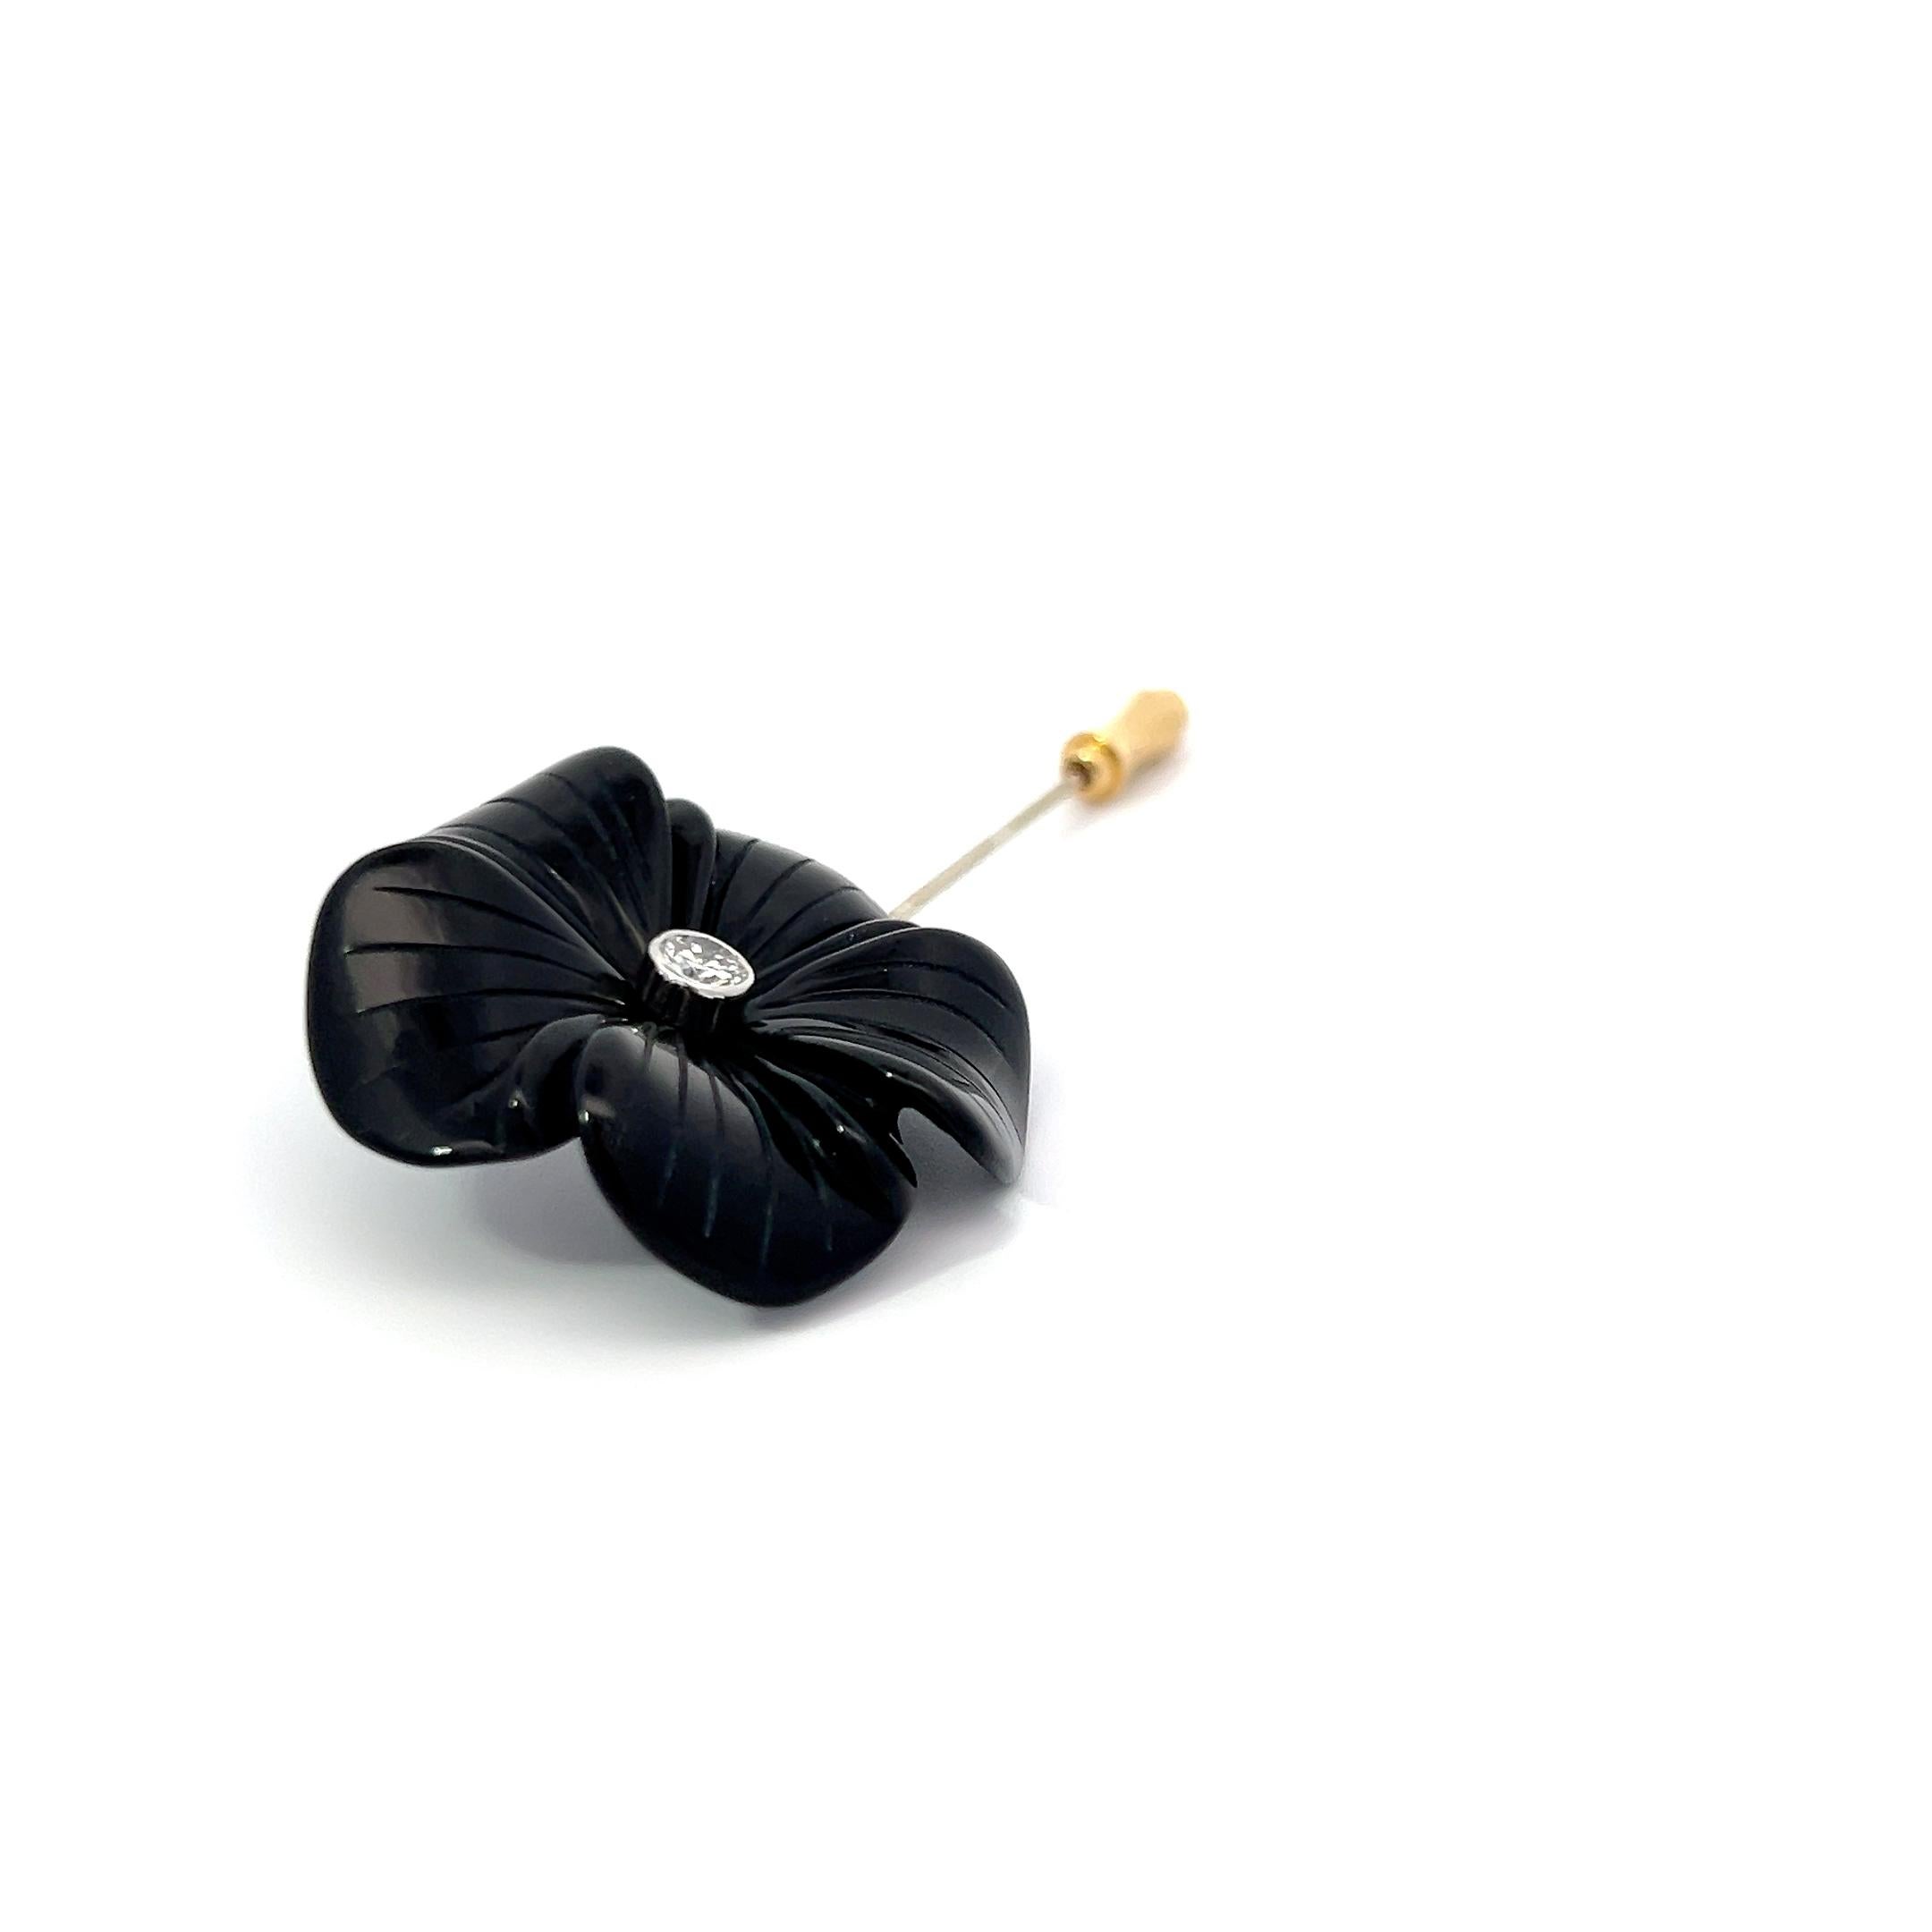 Diese atemberaubende Anstecknadel aus schwarzem Onyx mit geschnitzter Blume, verziert mit einem schillernden Diamanten von 0,43 ct GH VS und elegant aus Platin gefertigt, strahlt klassische Raffinesse aus.
Ihr Herzstück ist eine sorgfältig